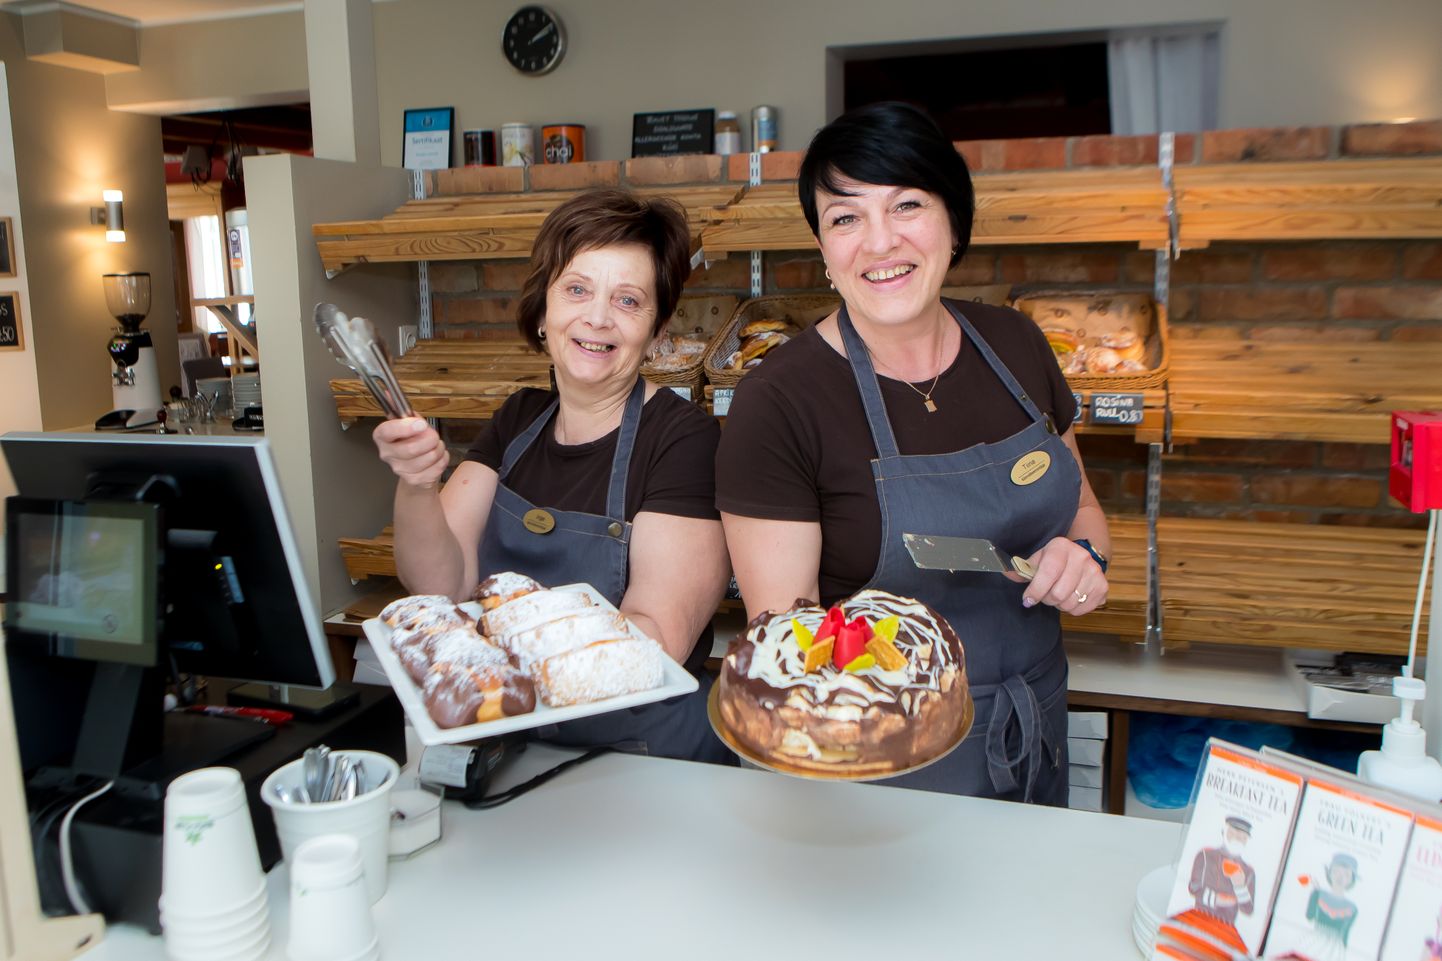 KÕIK ON OMAD: Vanalinna kohviku müüjad Inge Kirs ja Tiina Himanen panevad iga kliendi end oodatud külalisena tundma.